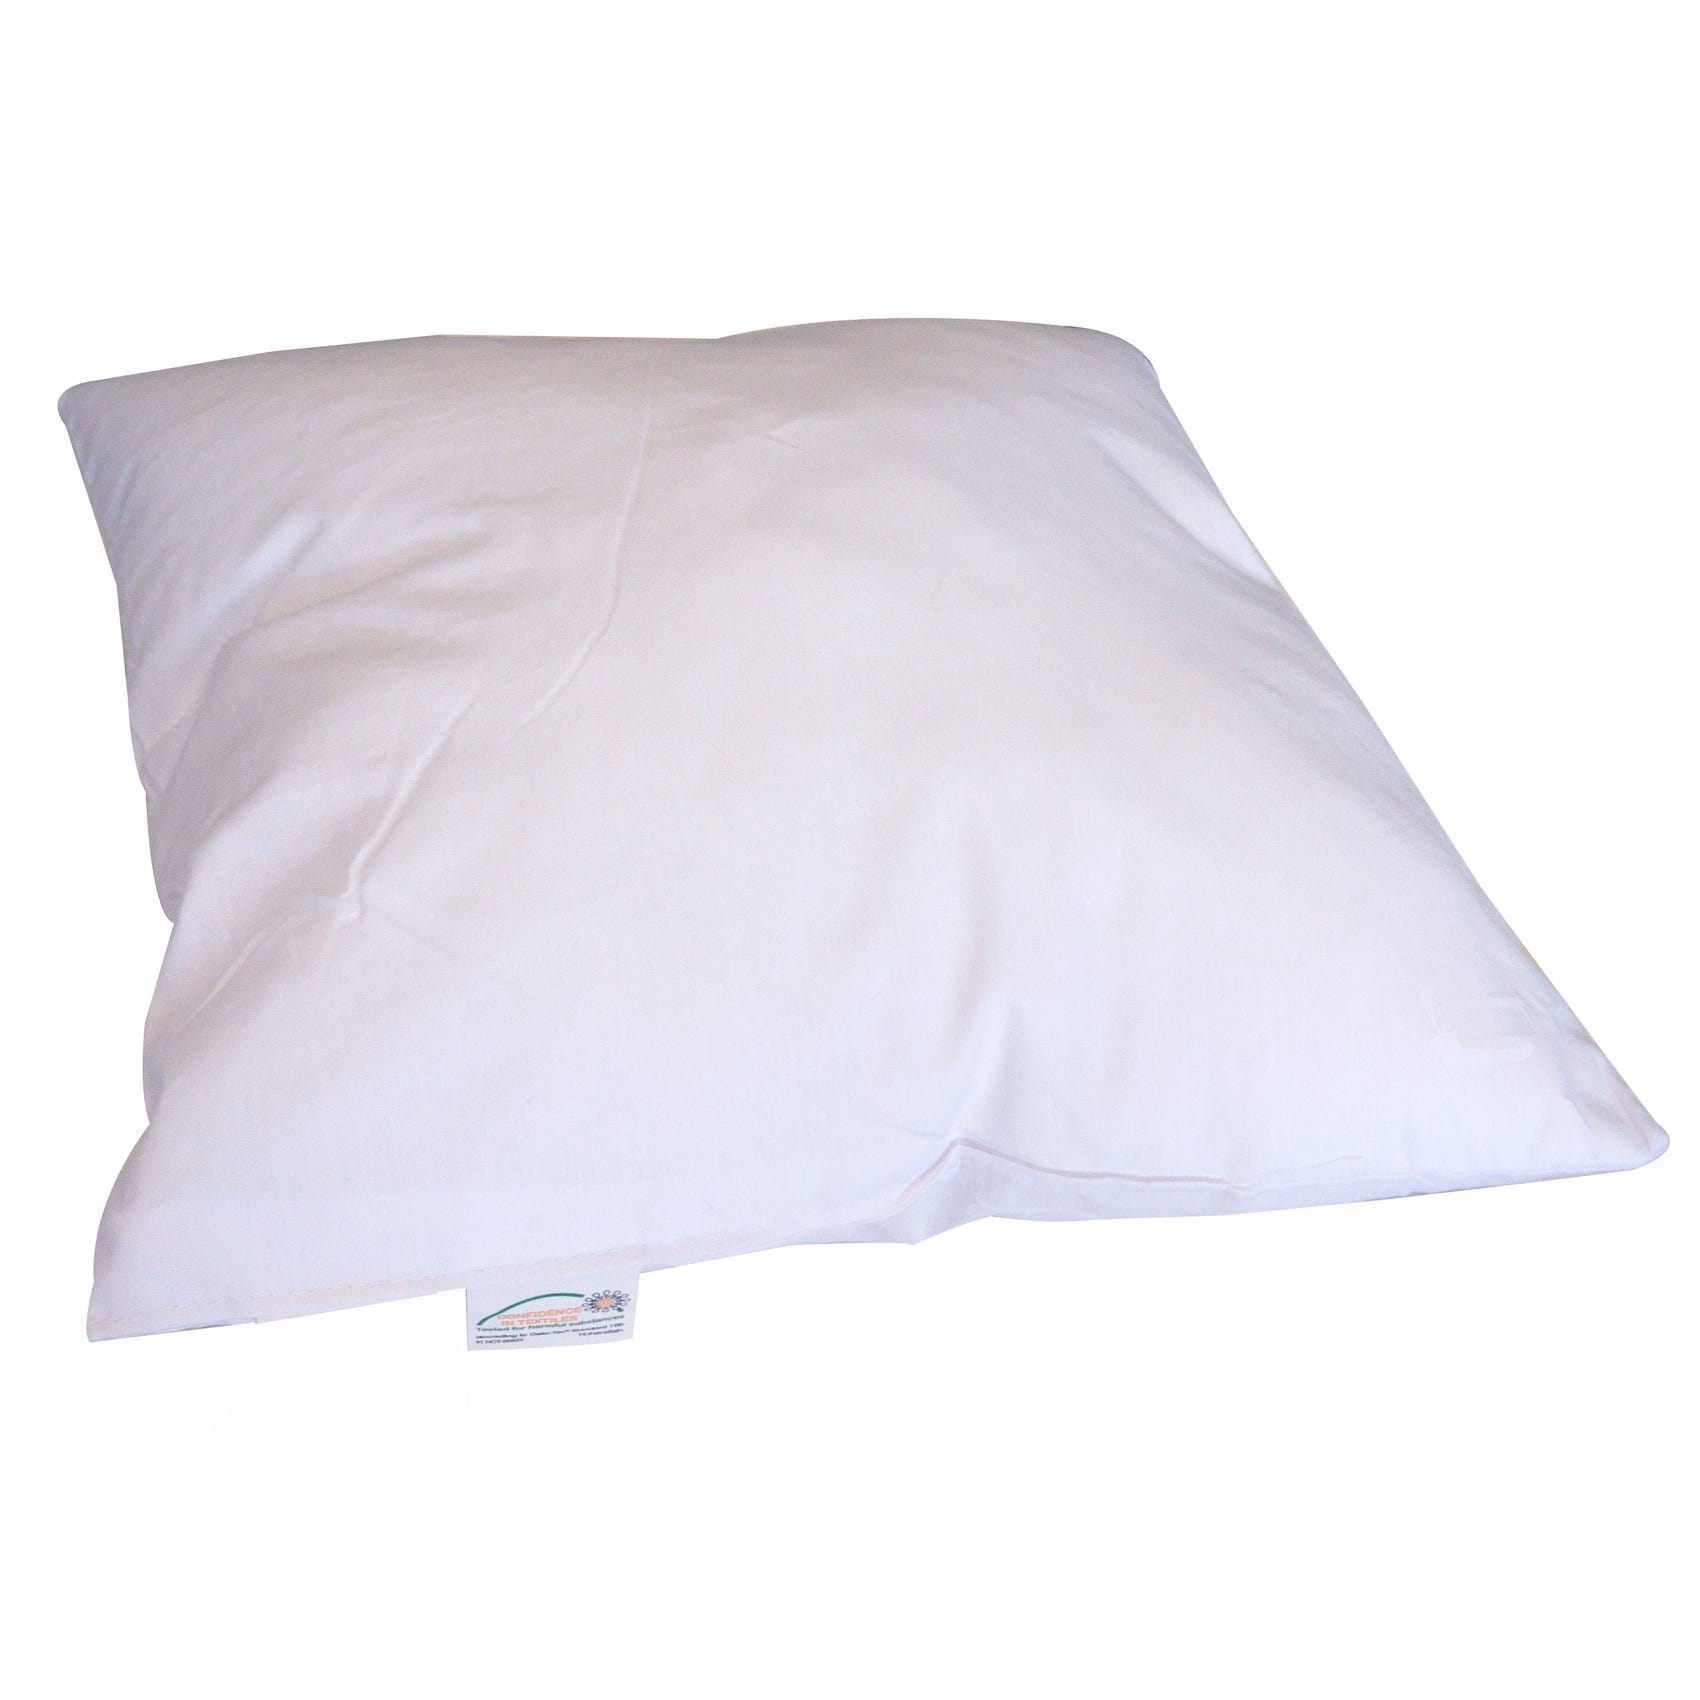 Coussin de garnissage coton/polyester - Blanc - 60x60 cm - Polyester/Coton